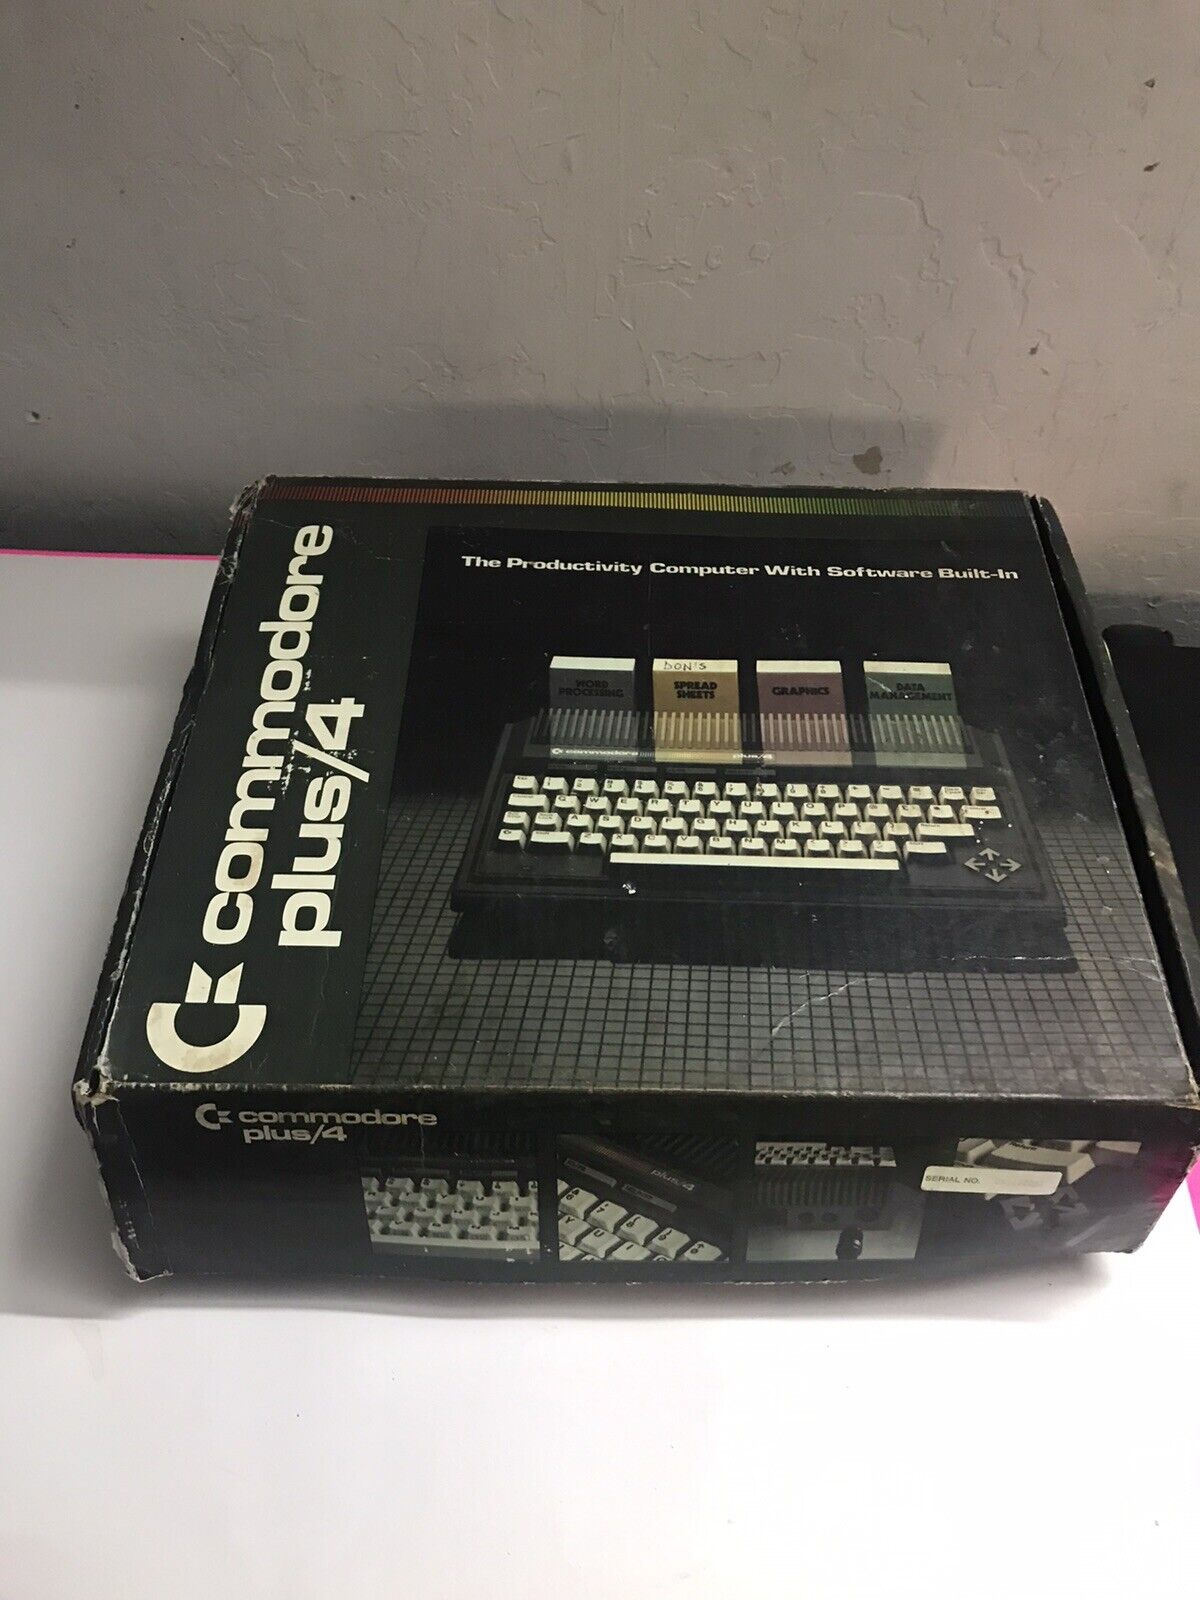 Commodore plus/4 with Original Box And Manuals -Read Description